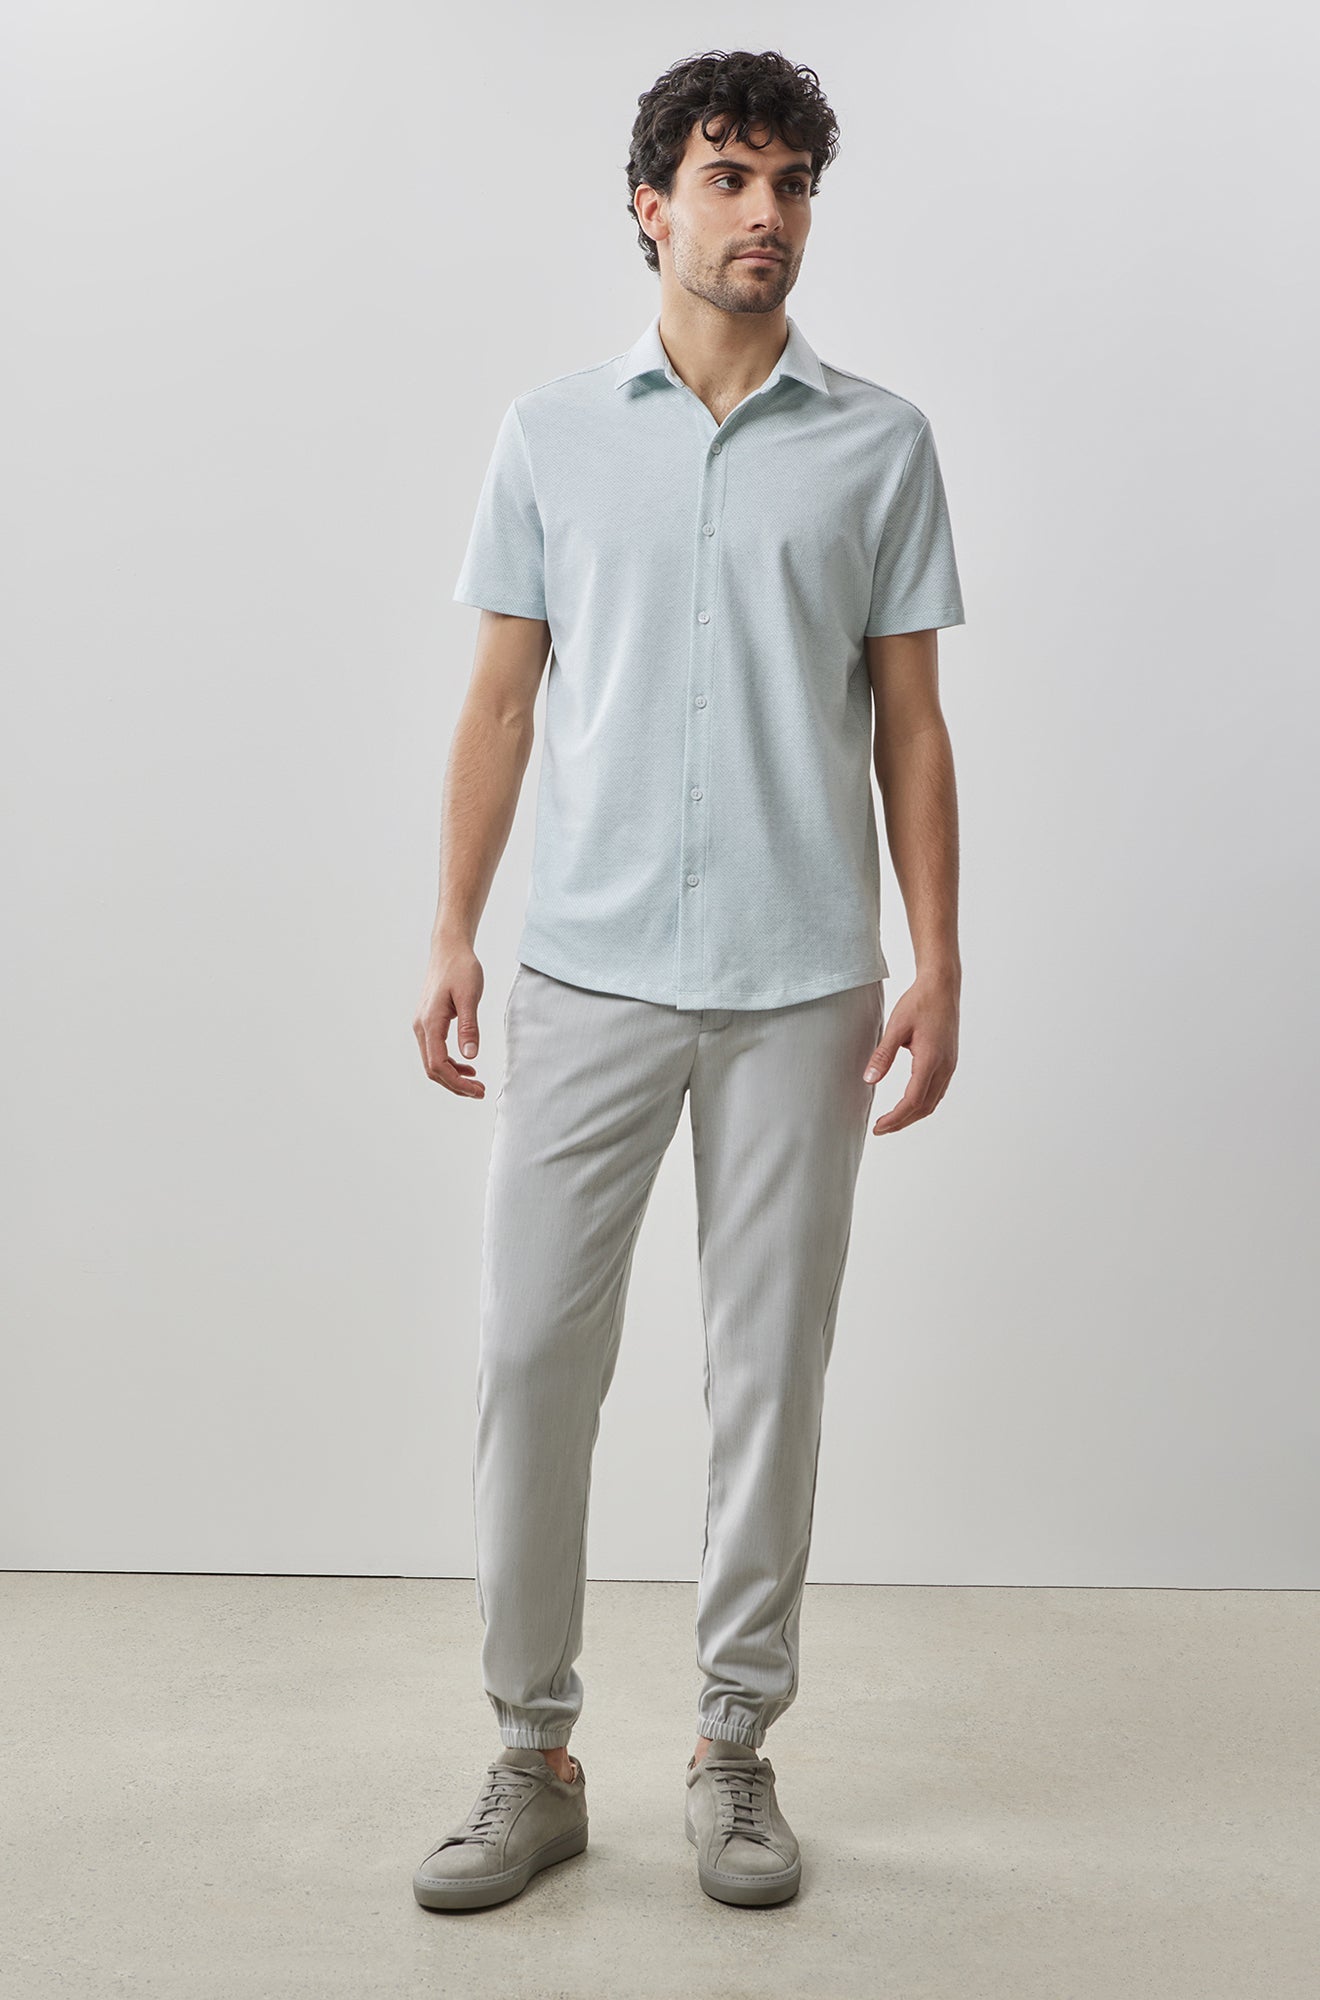 Chemise manches courtes en Knit pour homme par Robert Barakett | Keyes RB41090 TEAL1 | Boutique Vvög, vêtements mode pour homme et femme